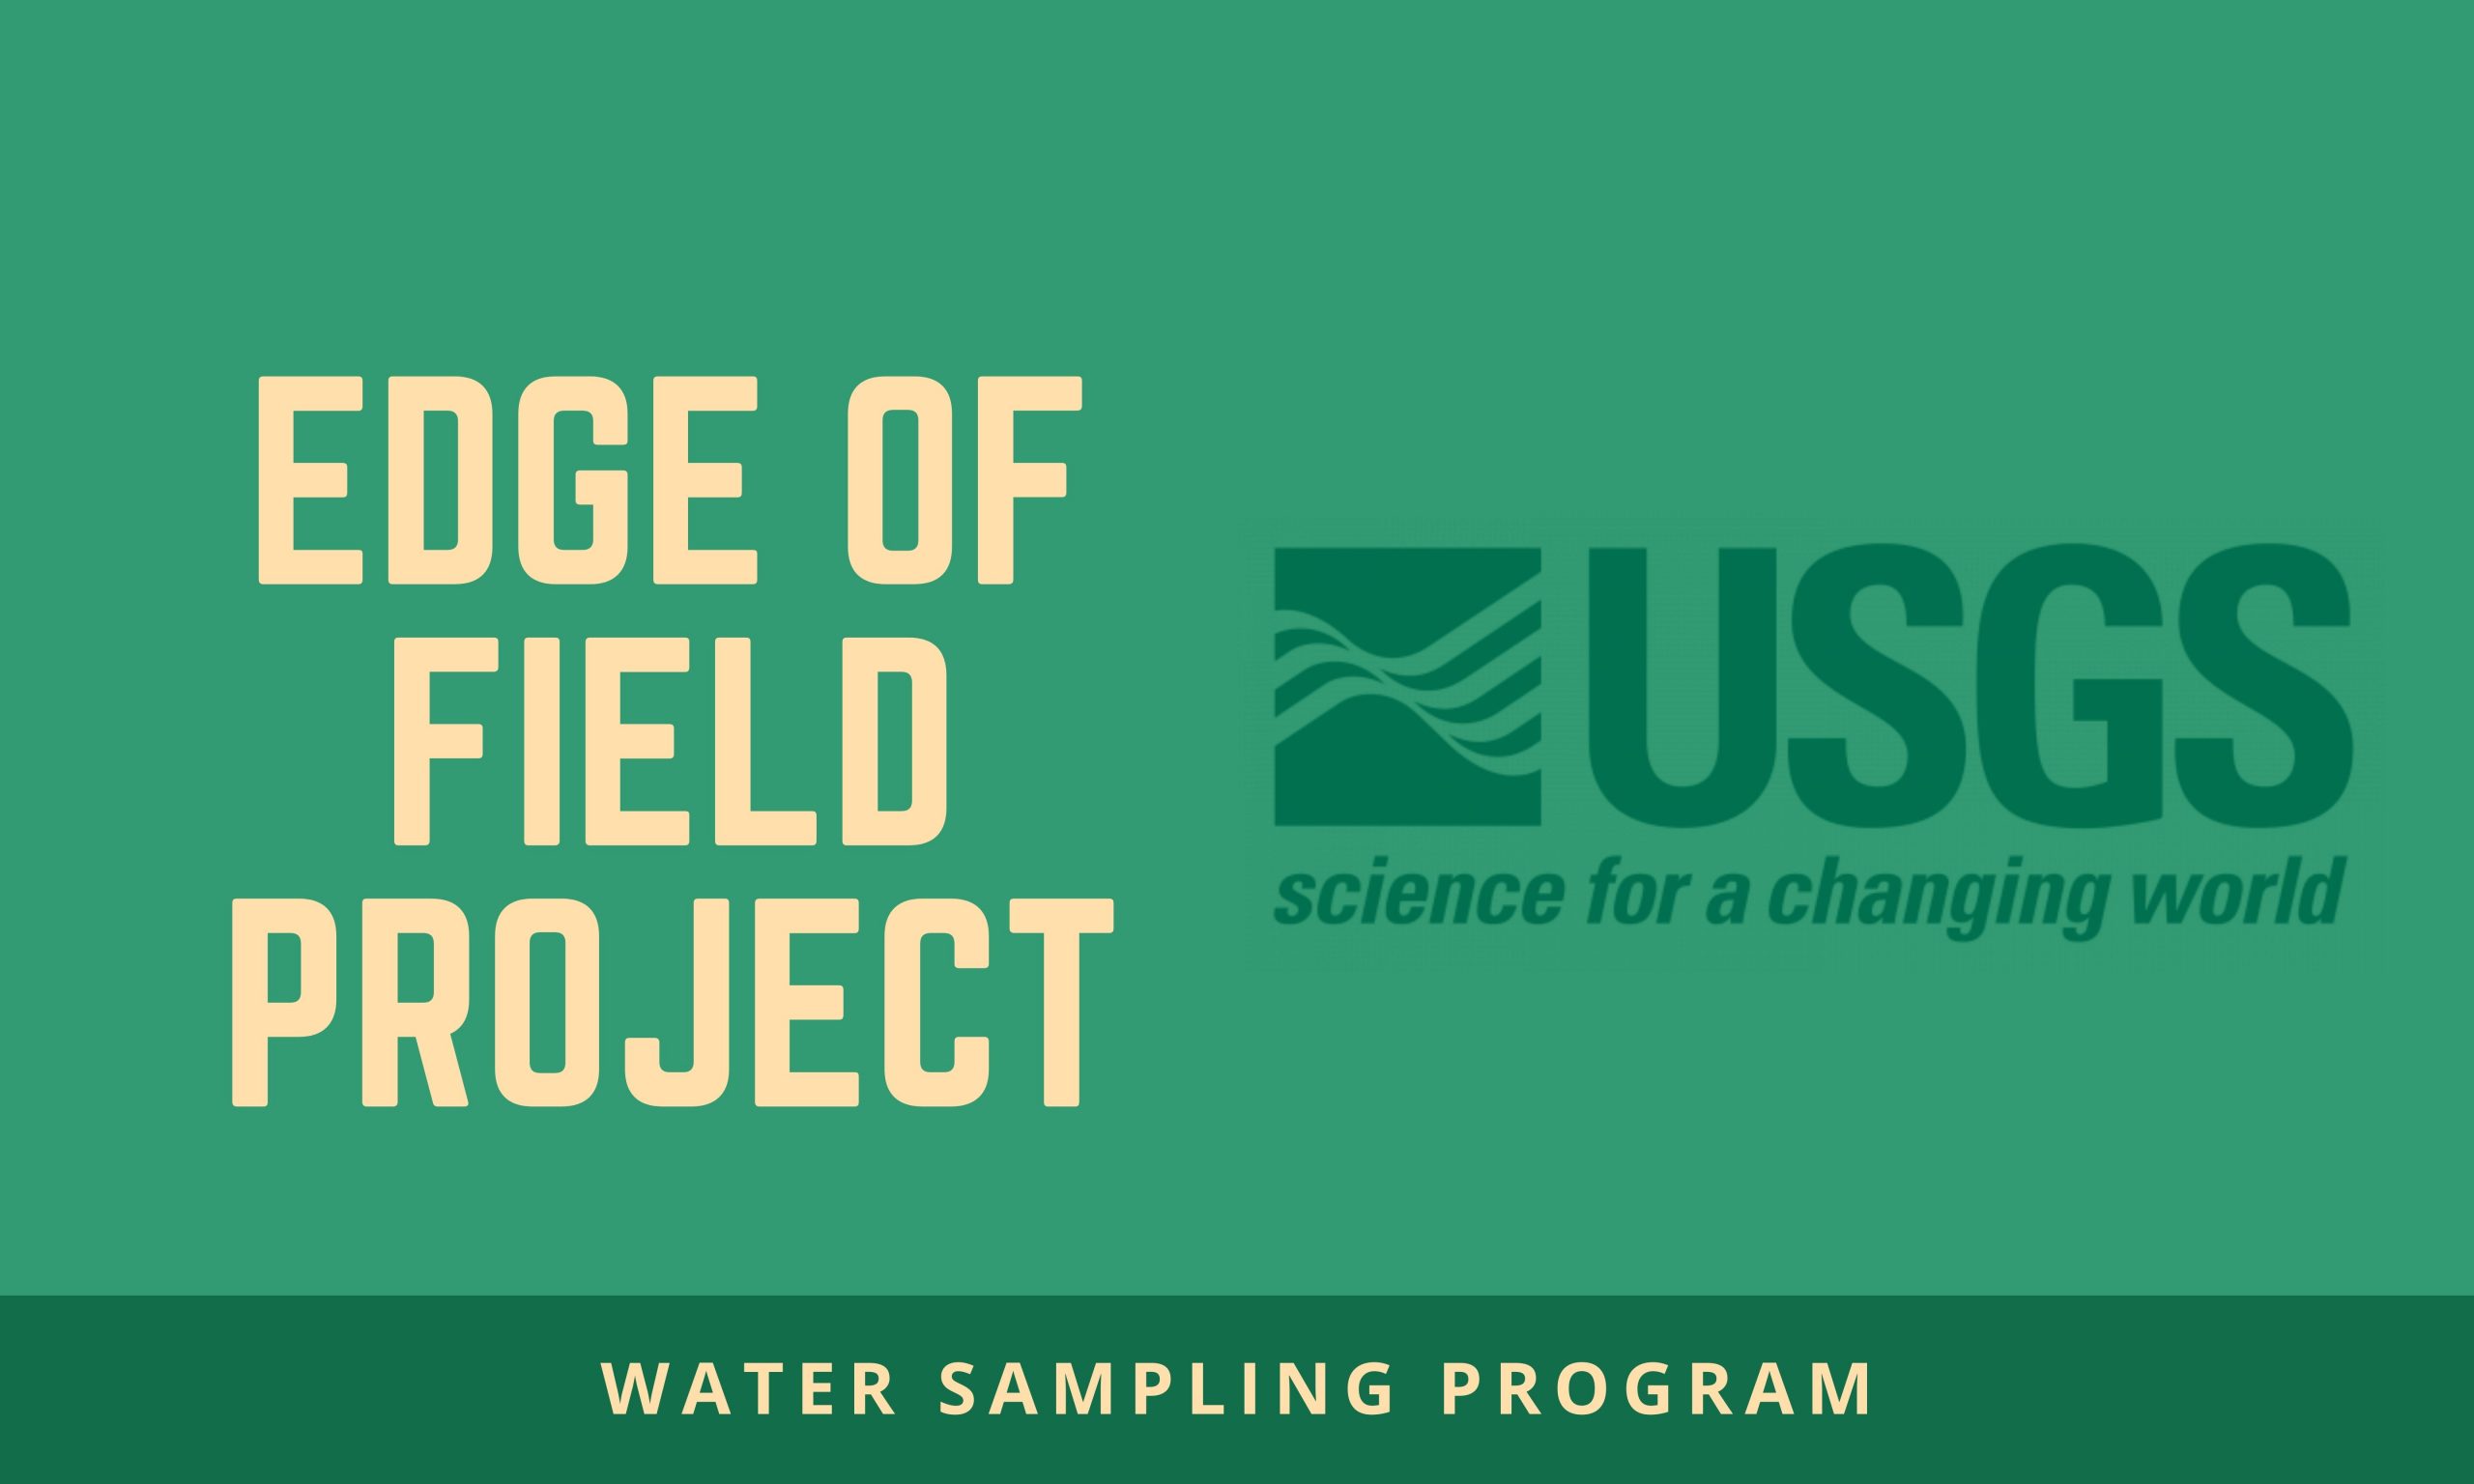 GLRI-USGS Edge of Field Project